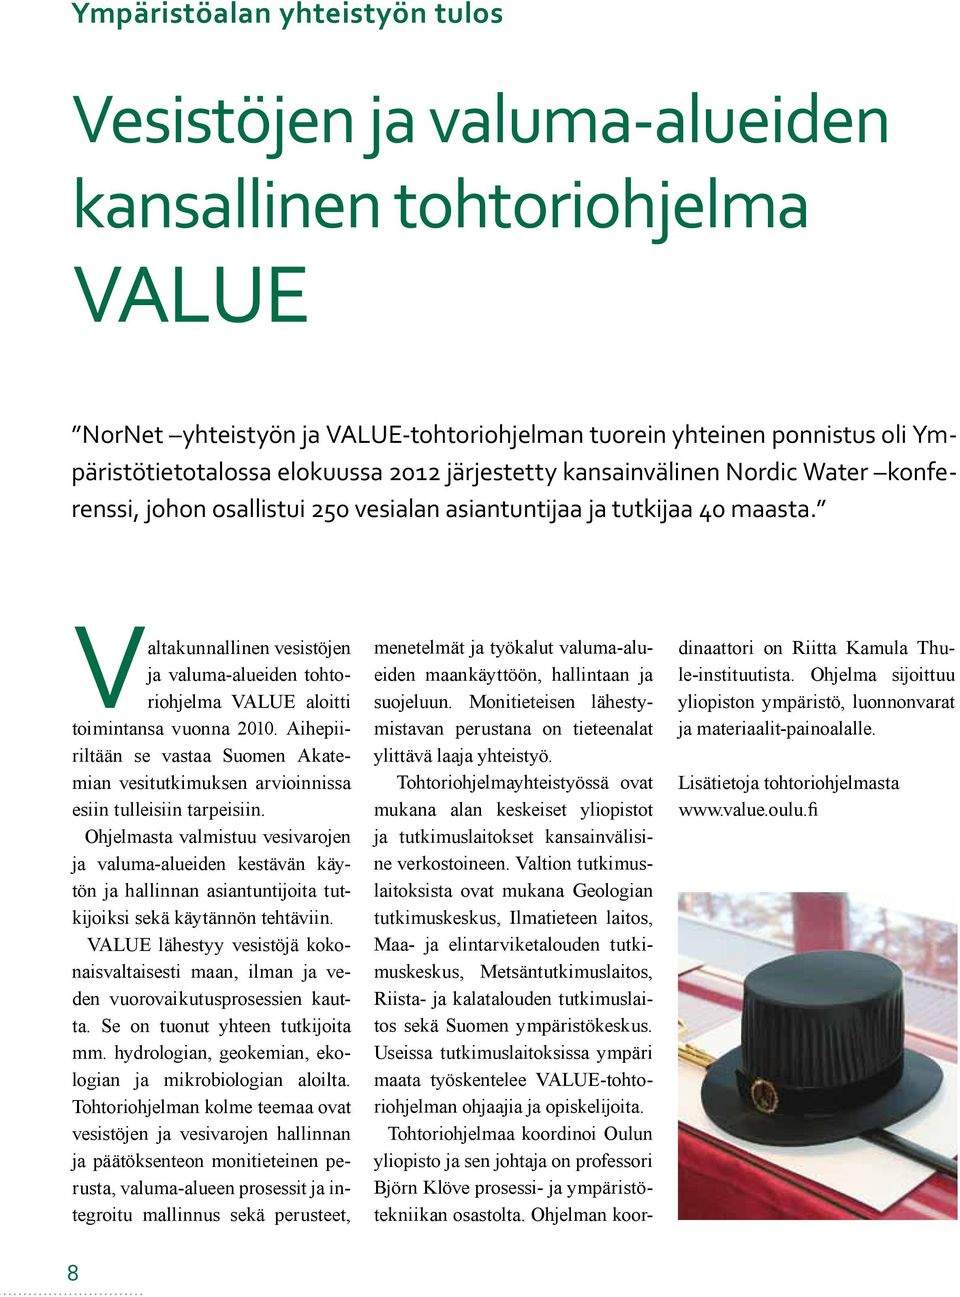 Valtakunnallinen vesistöjen ja valuma-alueiden tohtoriohjelma VALUE aloitti toimintansa vuonna 2010. Aihepiiriltään se vastaa Suomen Akatemian vesitutkimuksen arvioinnissa esiin tulleisiin tarpeisiin.